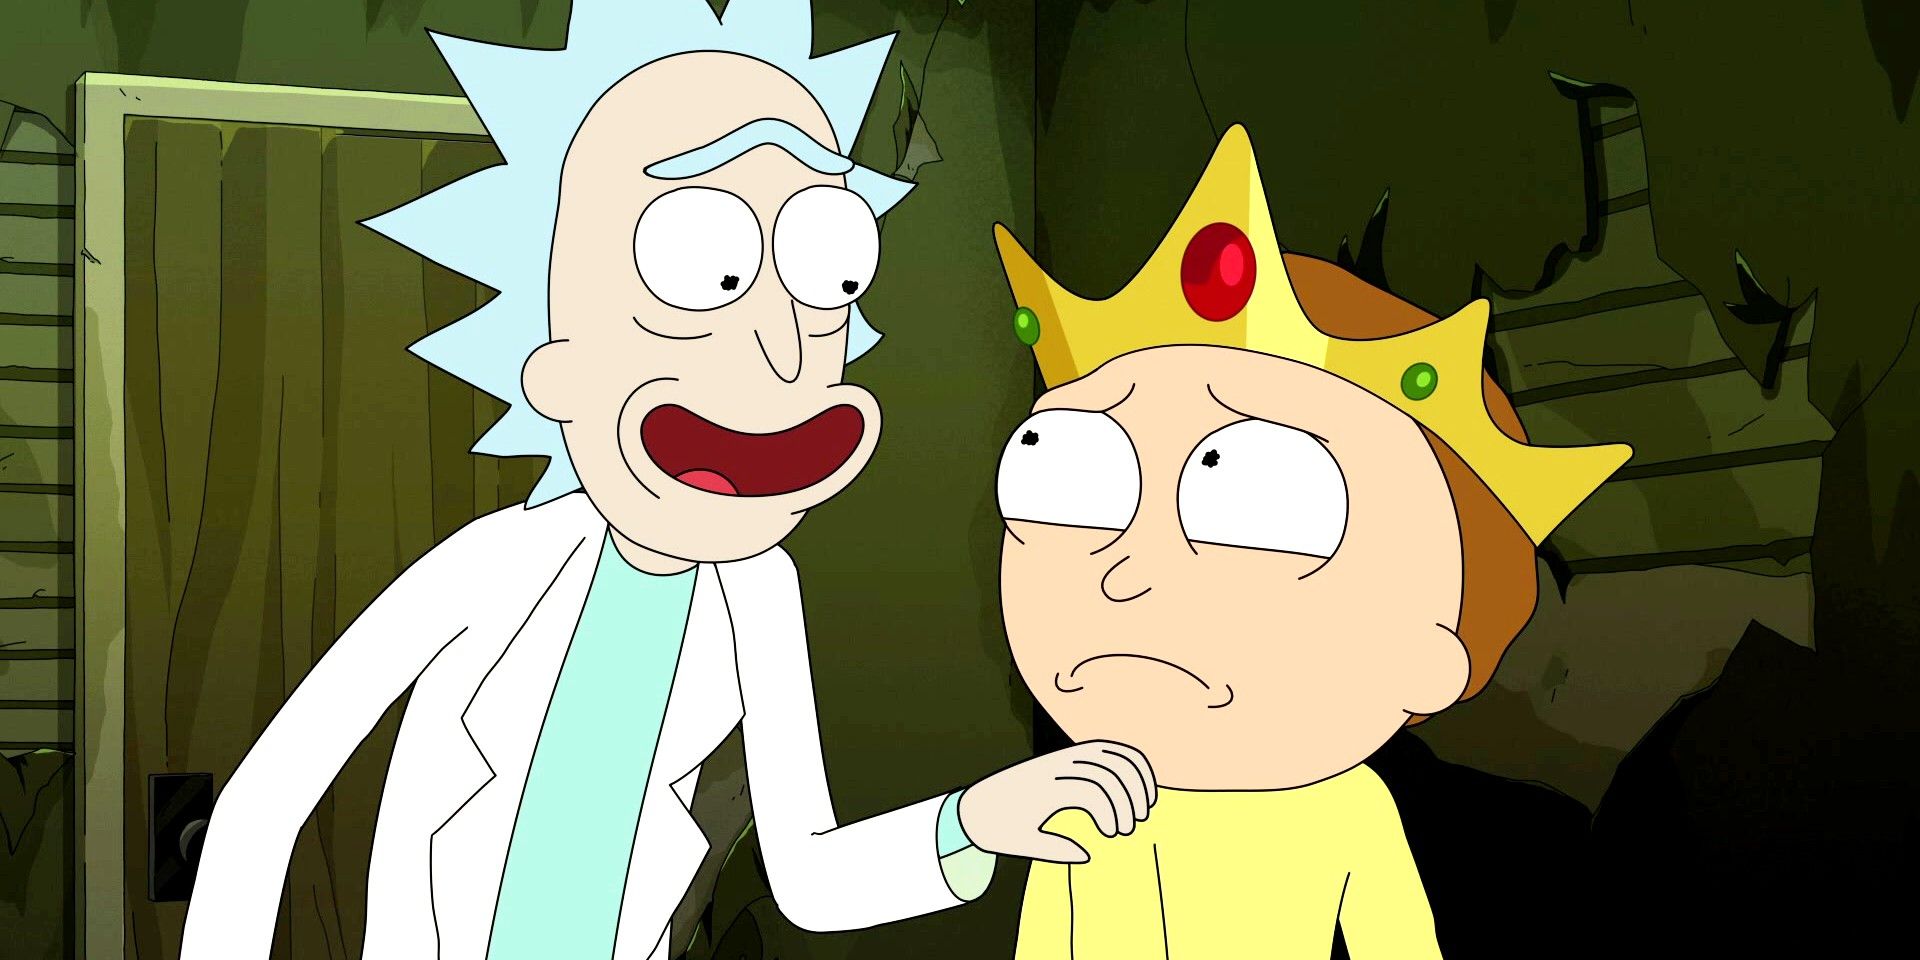 La temporada 7 de Rick & Morty podría ser “aún mejor” sin Justin Roiland, dice el productor